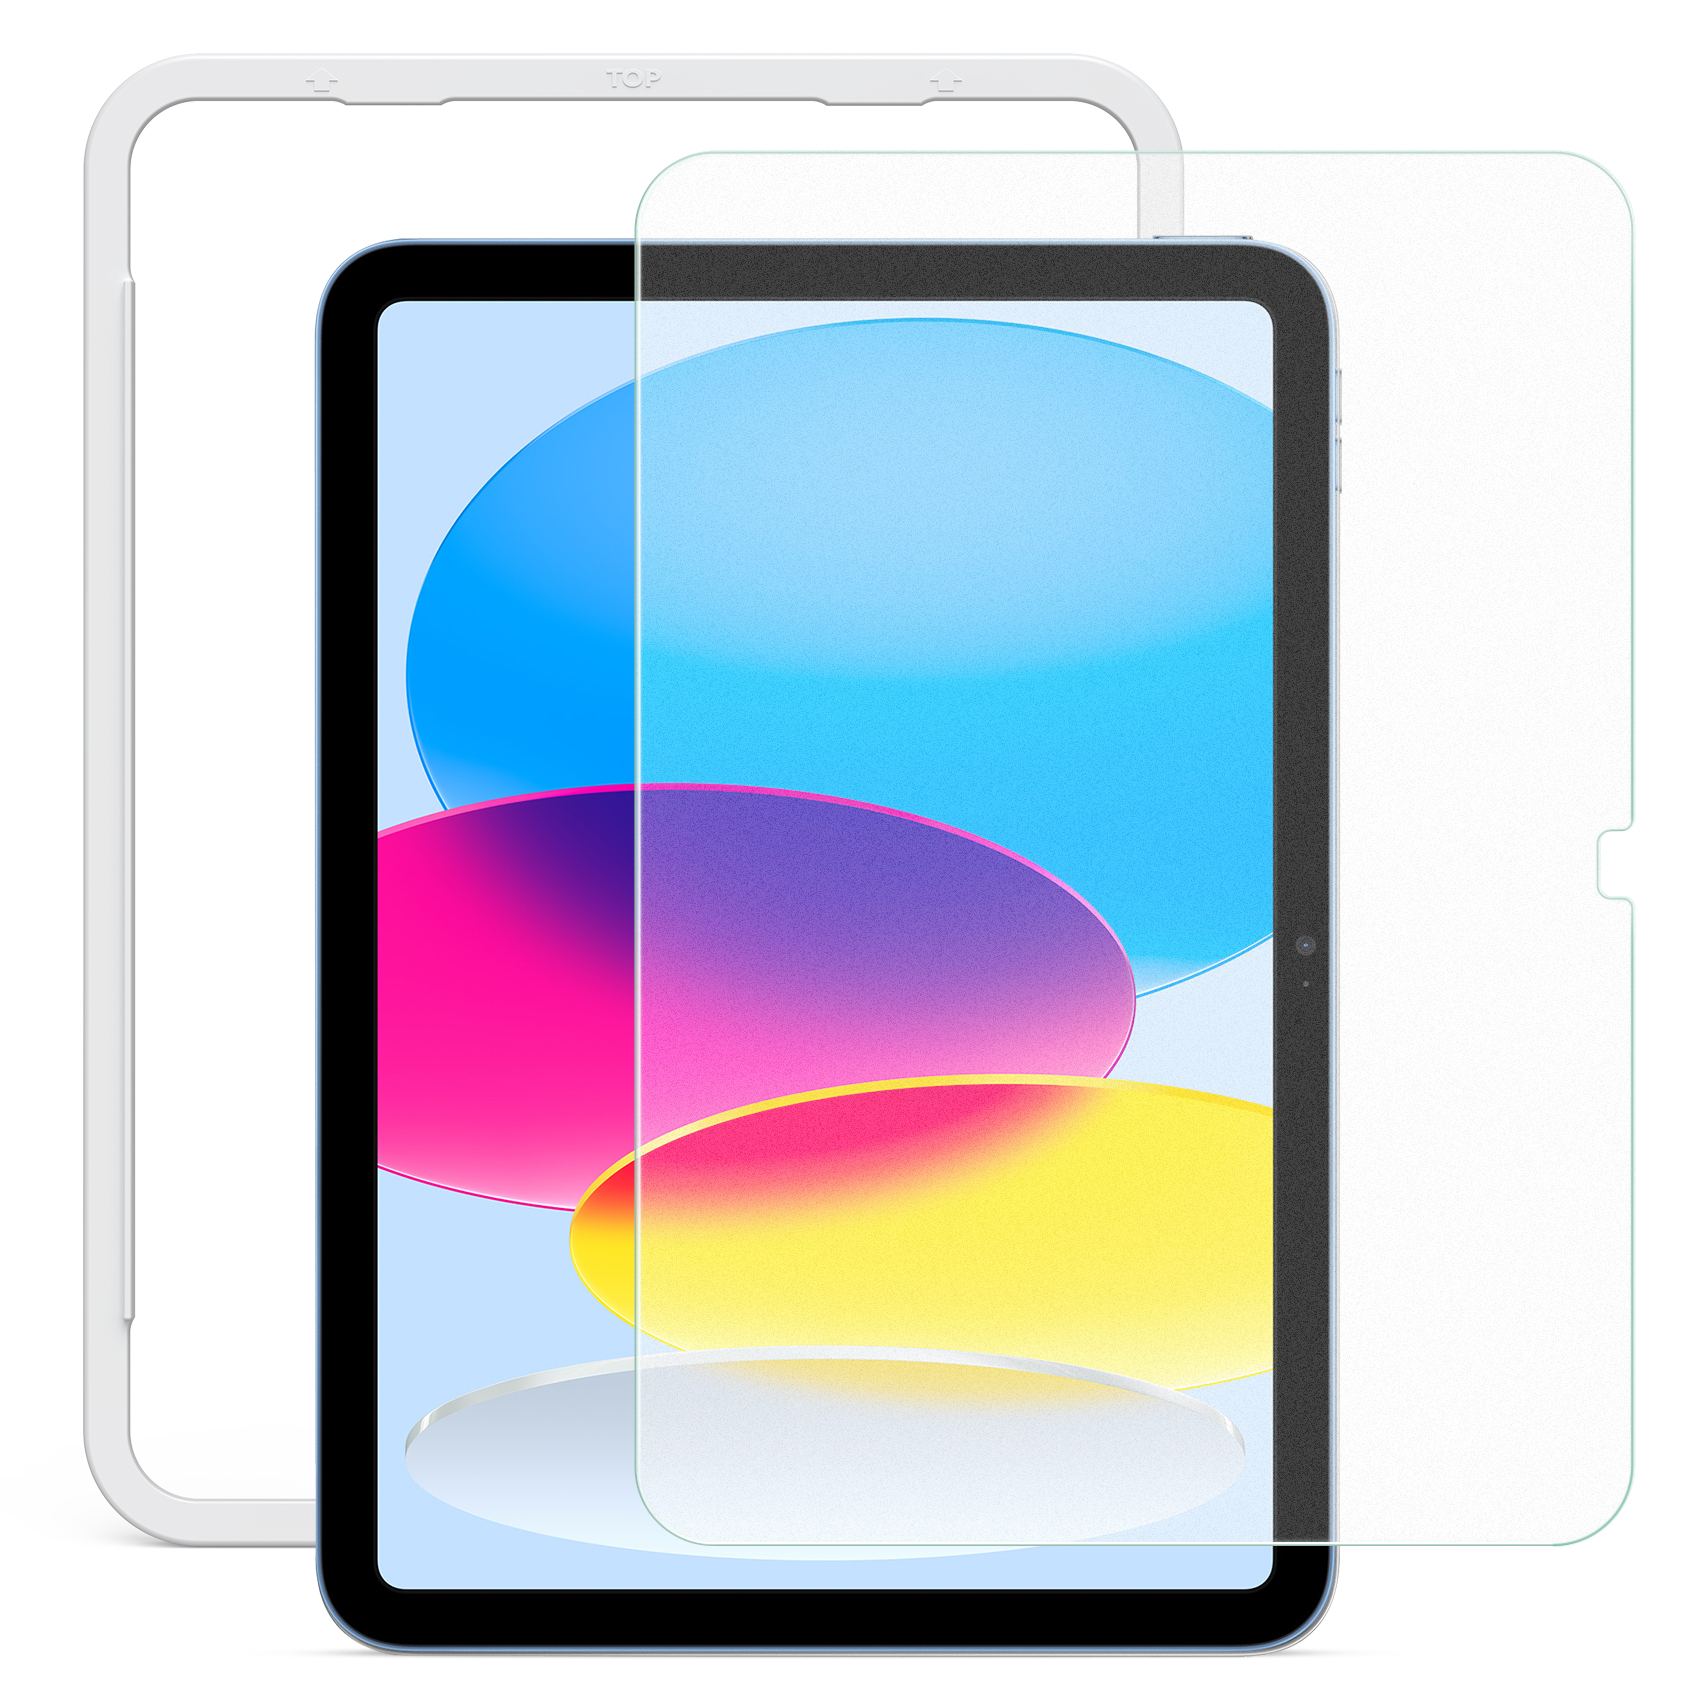 NIMASO iPad アンチグレアフィルム 保護フィルム iPad Air5 第9 8 7世代 iPad Pro11 Pro10.5 ipad mini6 iPad air4 air3 反射フィルム